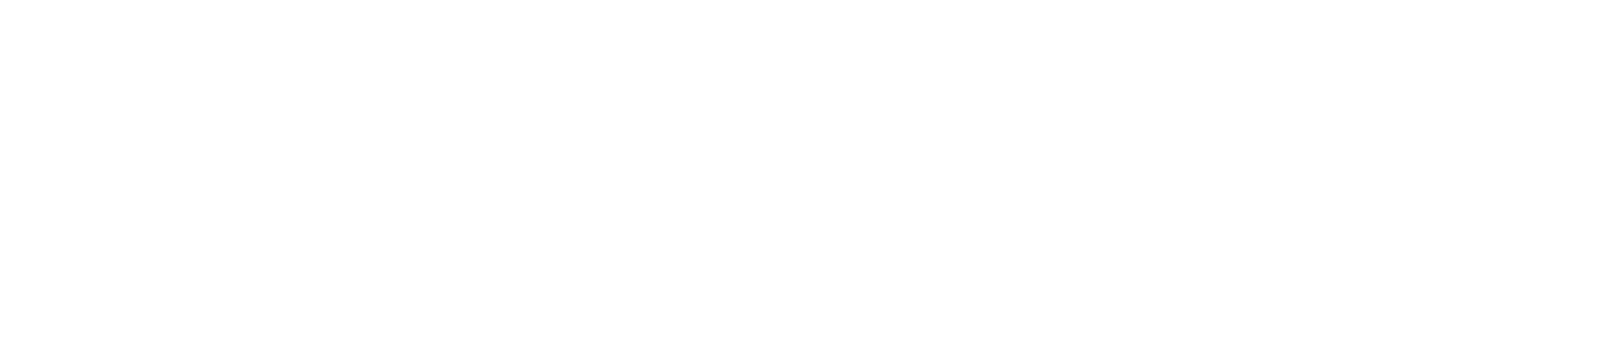 時期：2023年9月　会場：富士急ハイランド・コニファーフォレスト